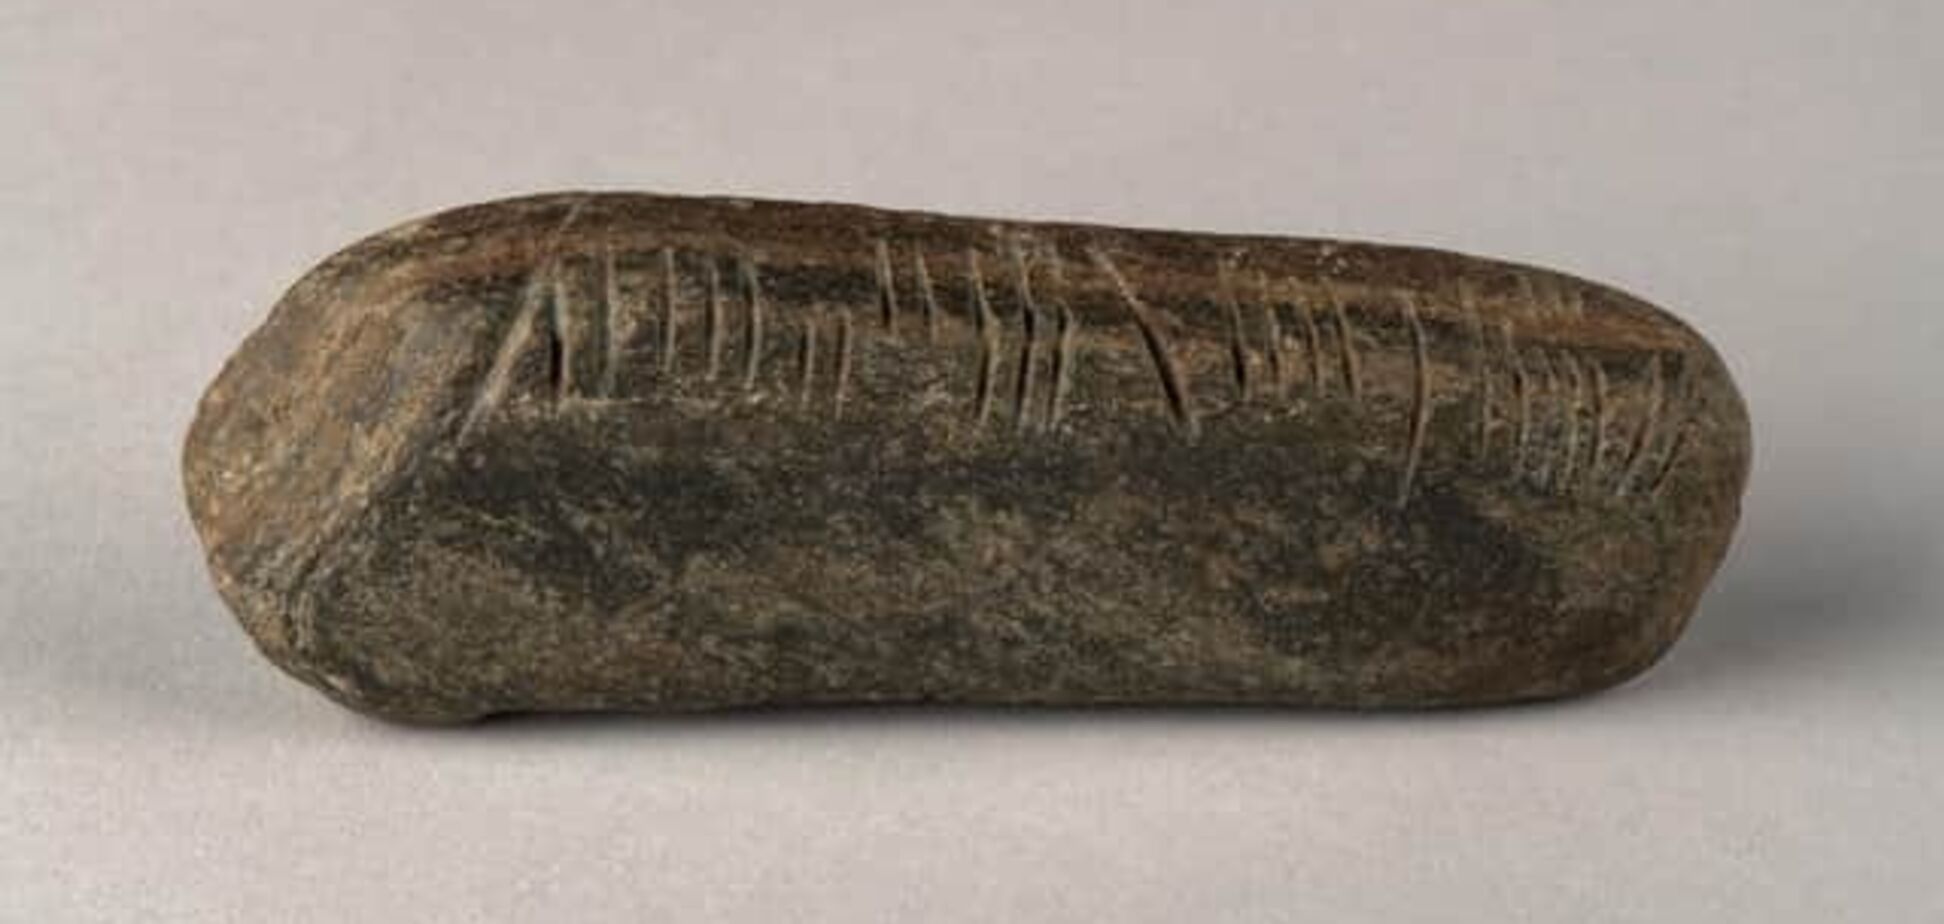 Привет из IV века. Учитель географии нашел в своем саду камень с загадочными пометками